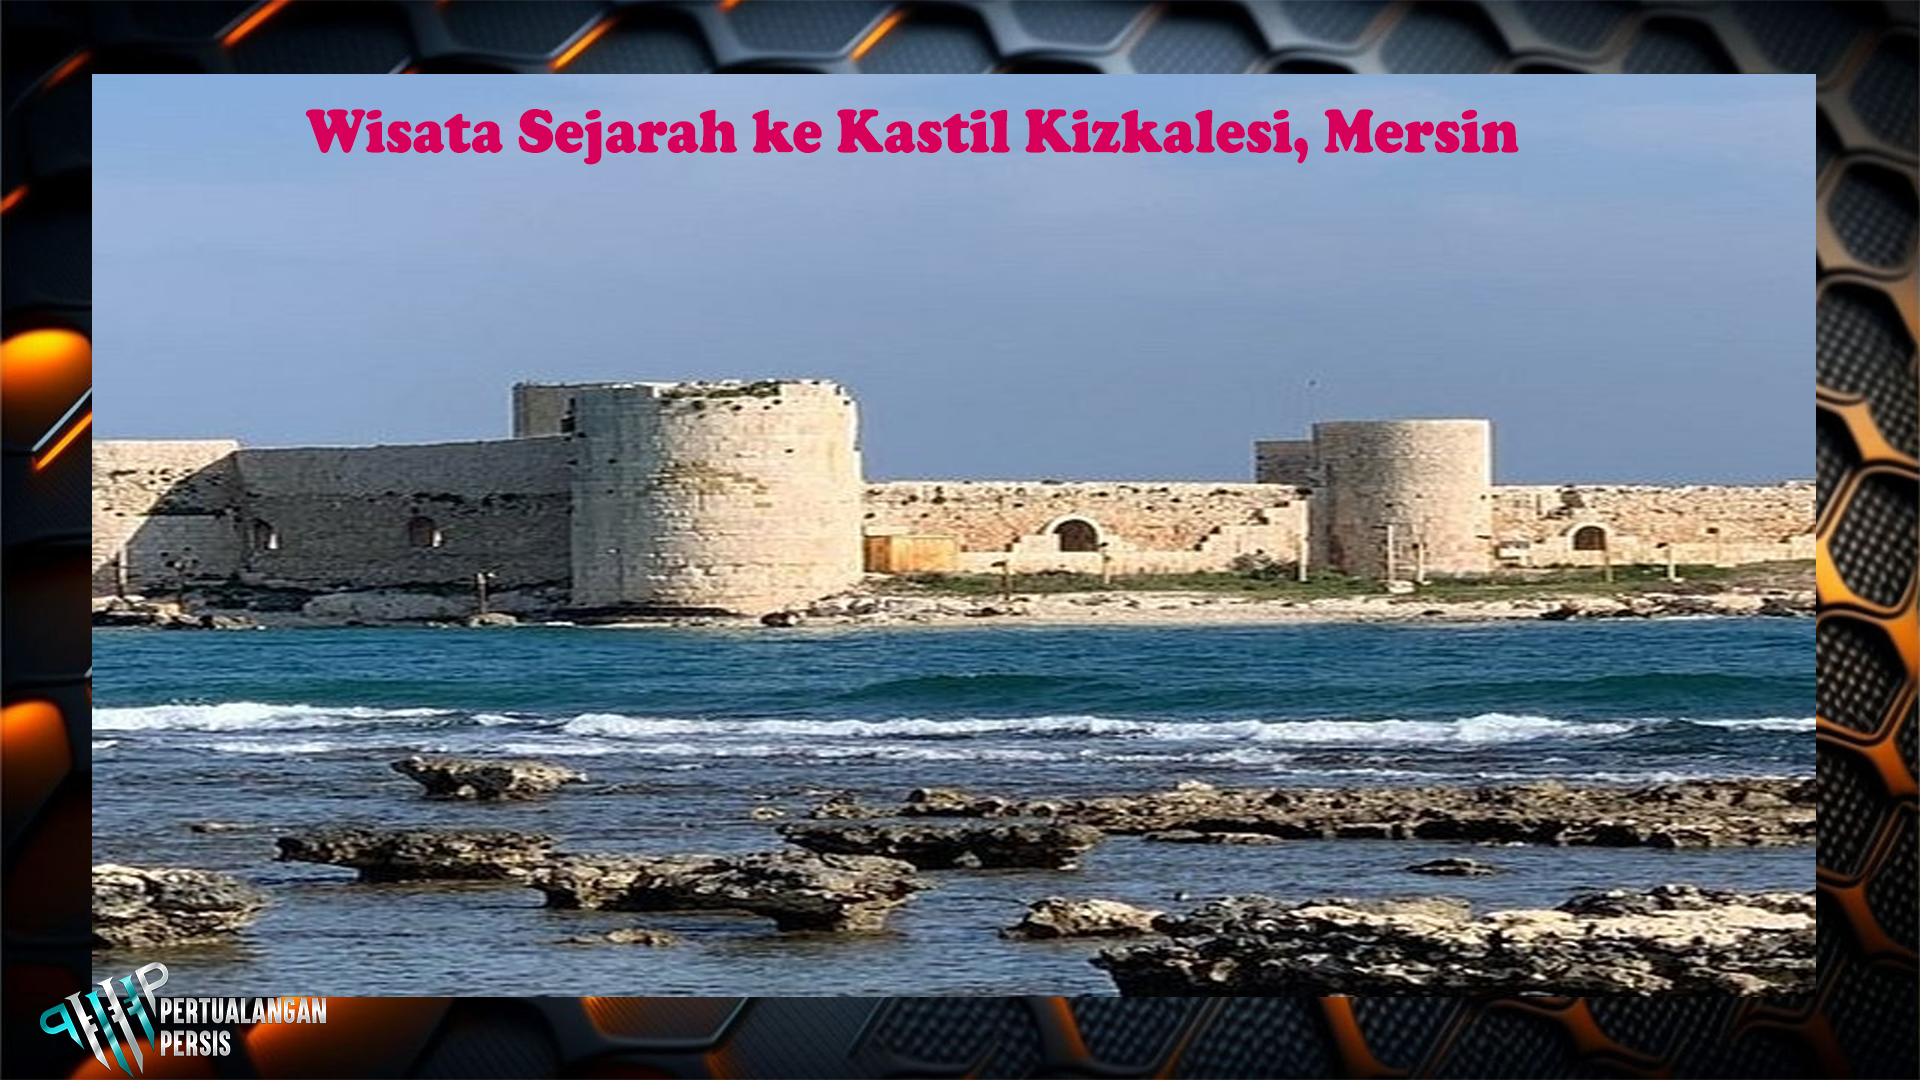 Wisata Sejarah ke Kastil Kizkalesi, Mersin